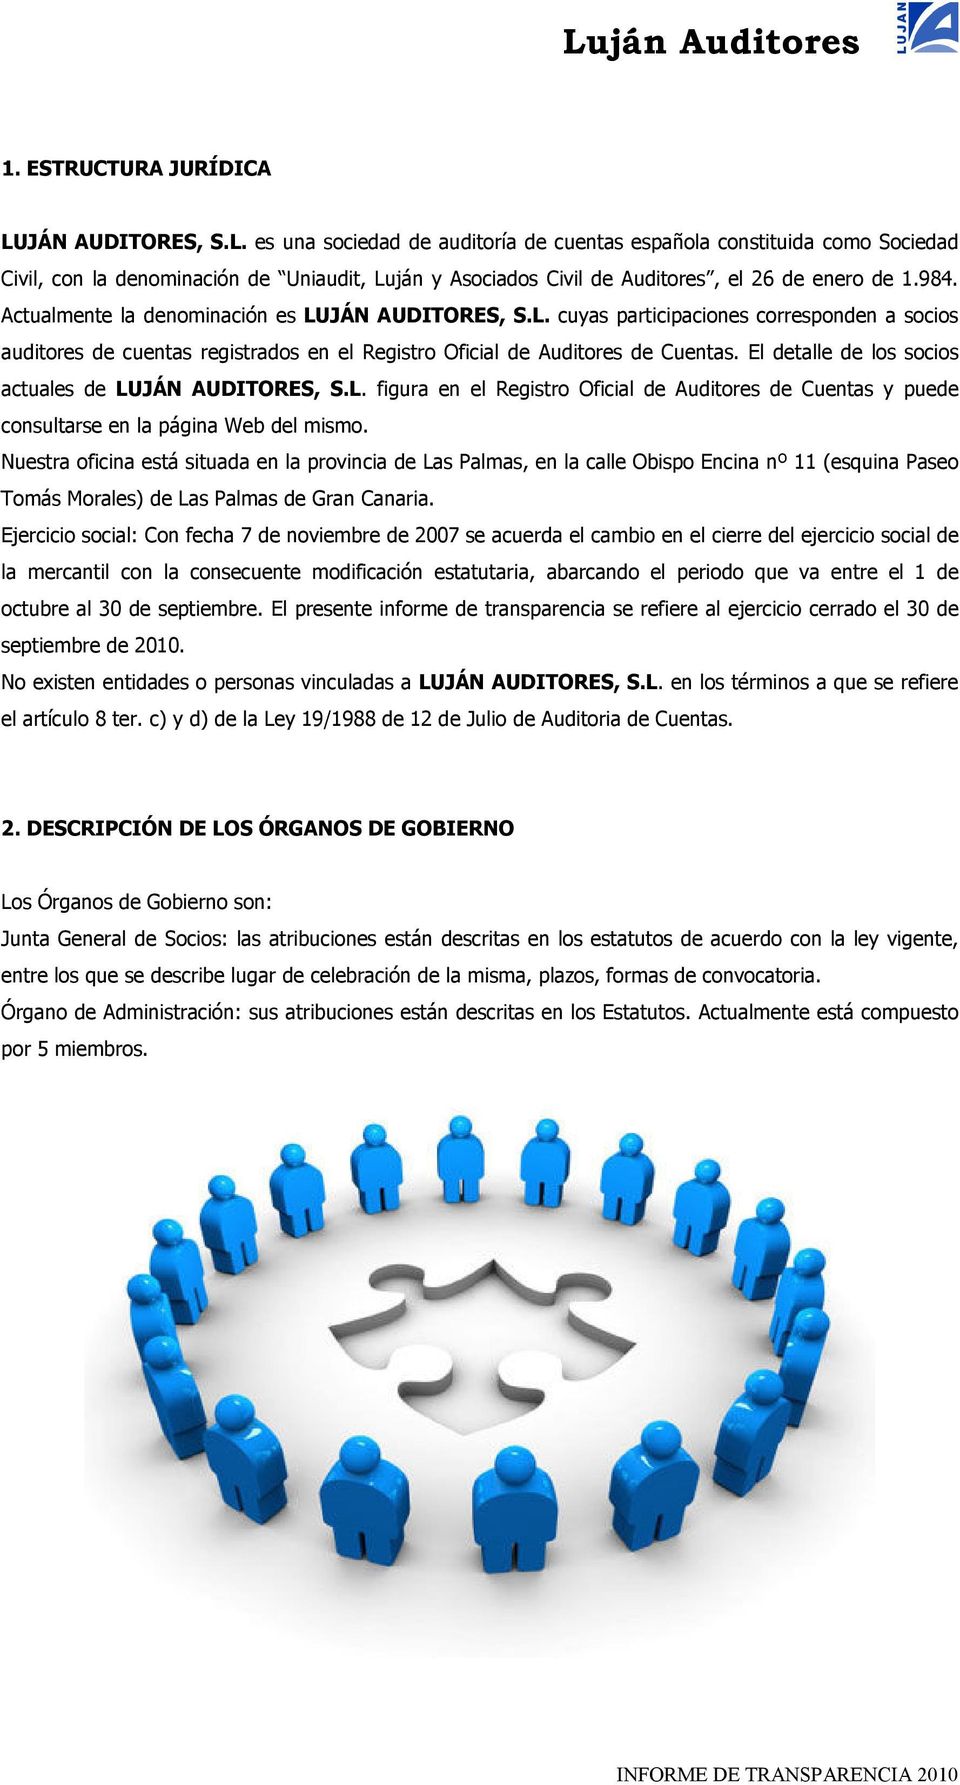 El detalle de los socios actuales de LUJÁN AUDITORES, S.L. figura en el Registro Oficial de Auditores de Cuentas y puede consultarse en la página Web del mismo.